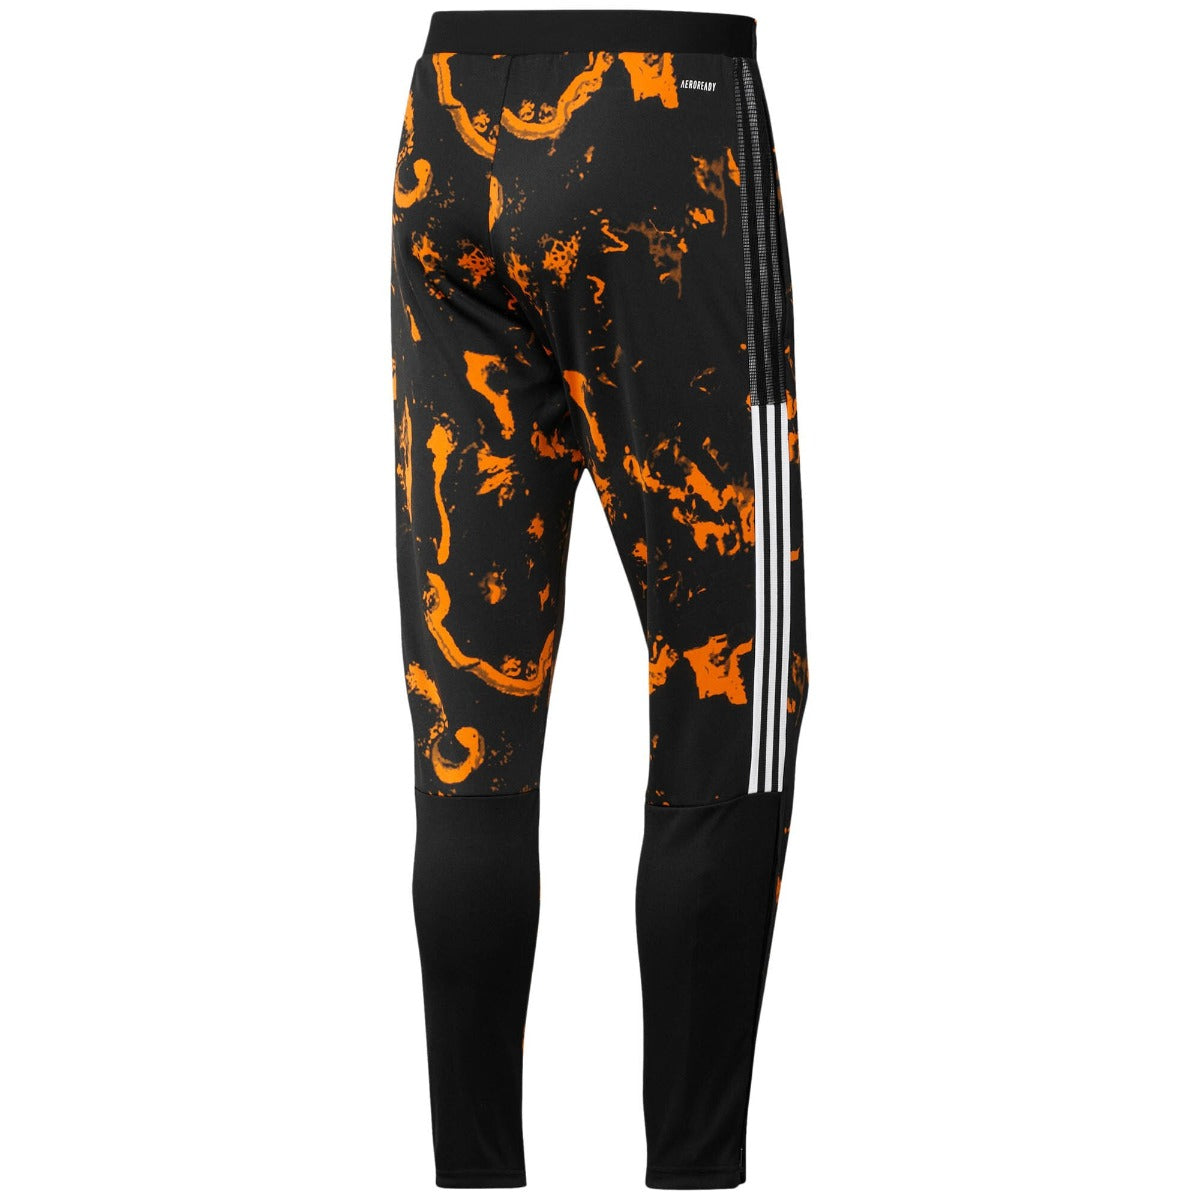 Adidas 2020-21 Juventus AOP Training Pants - Black-Orange